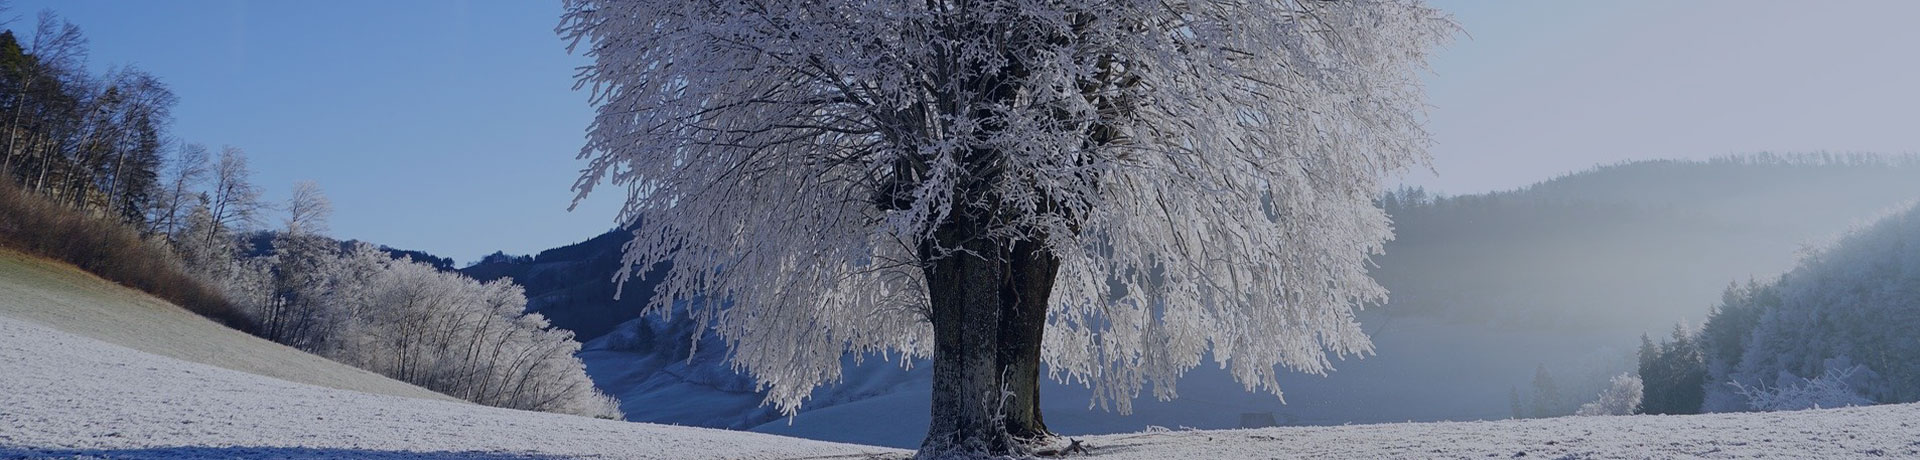 Un arbre au milieu de la neige